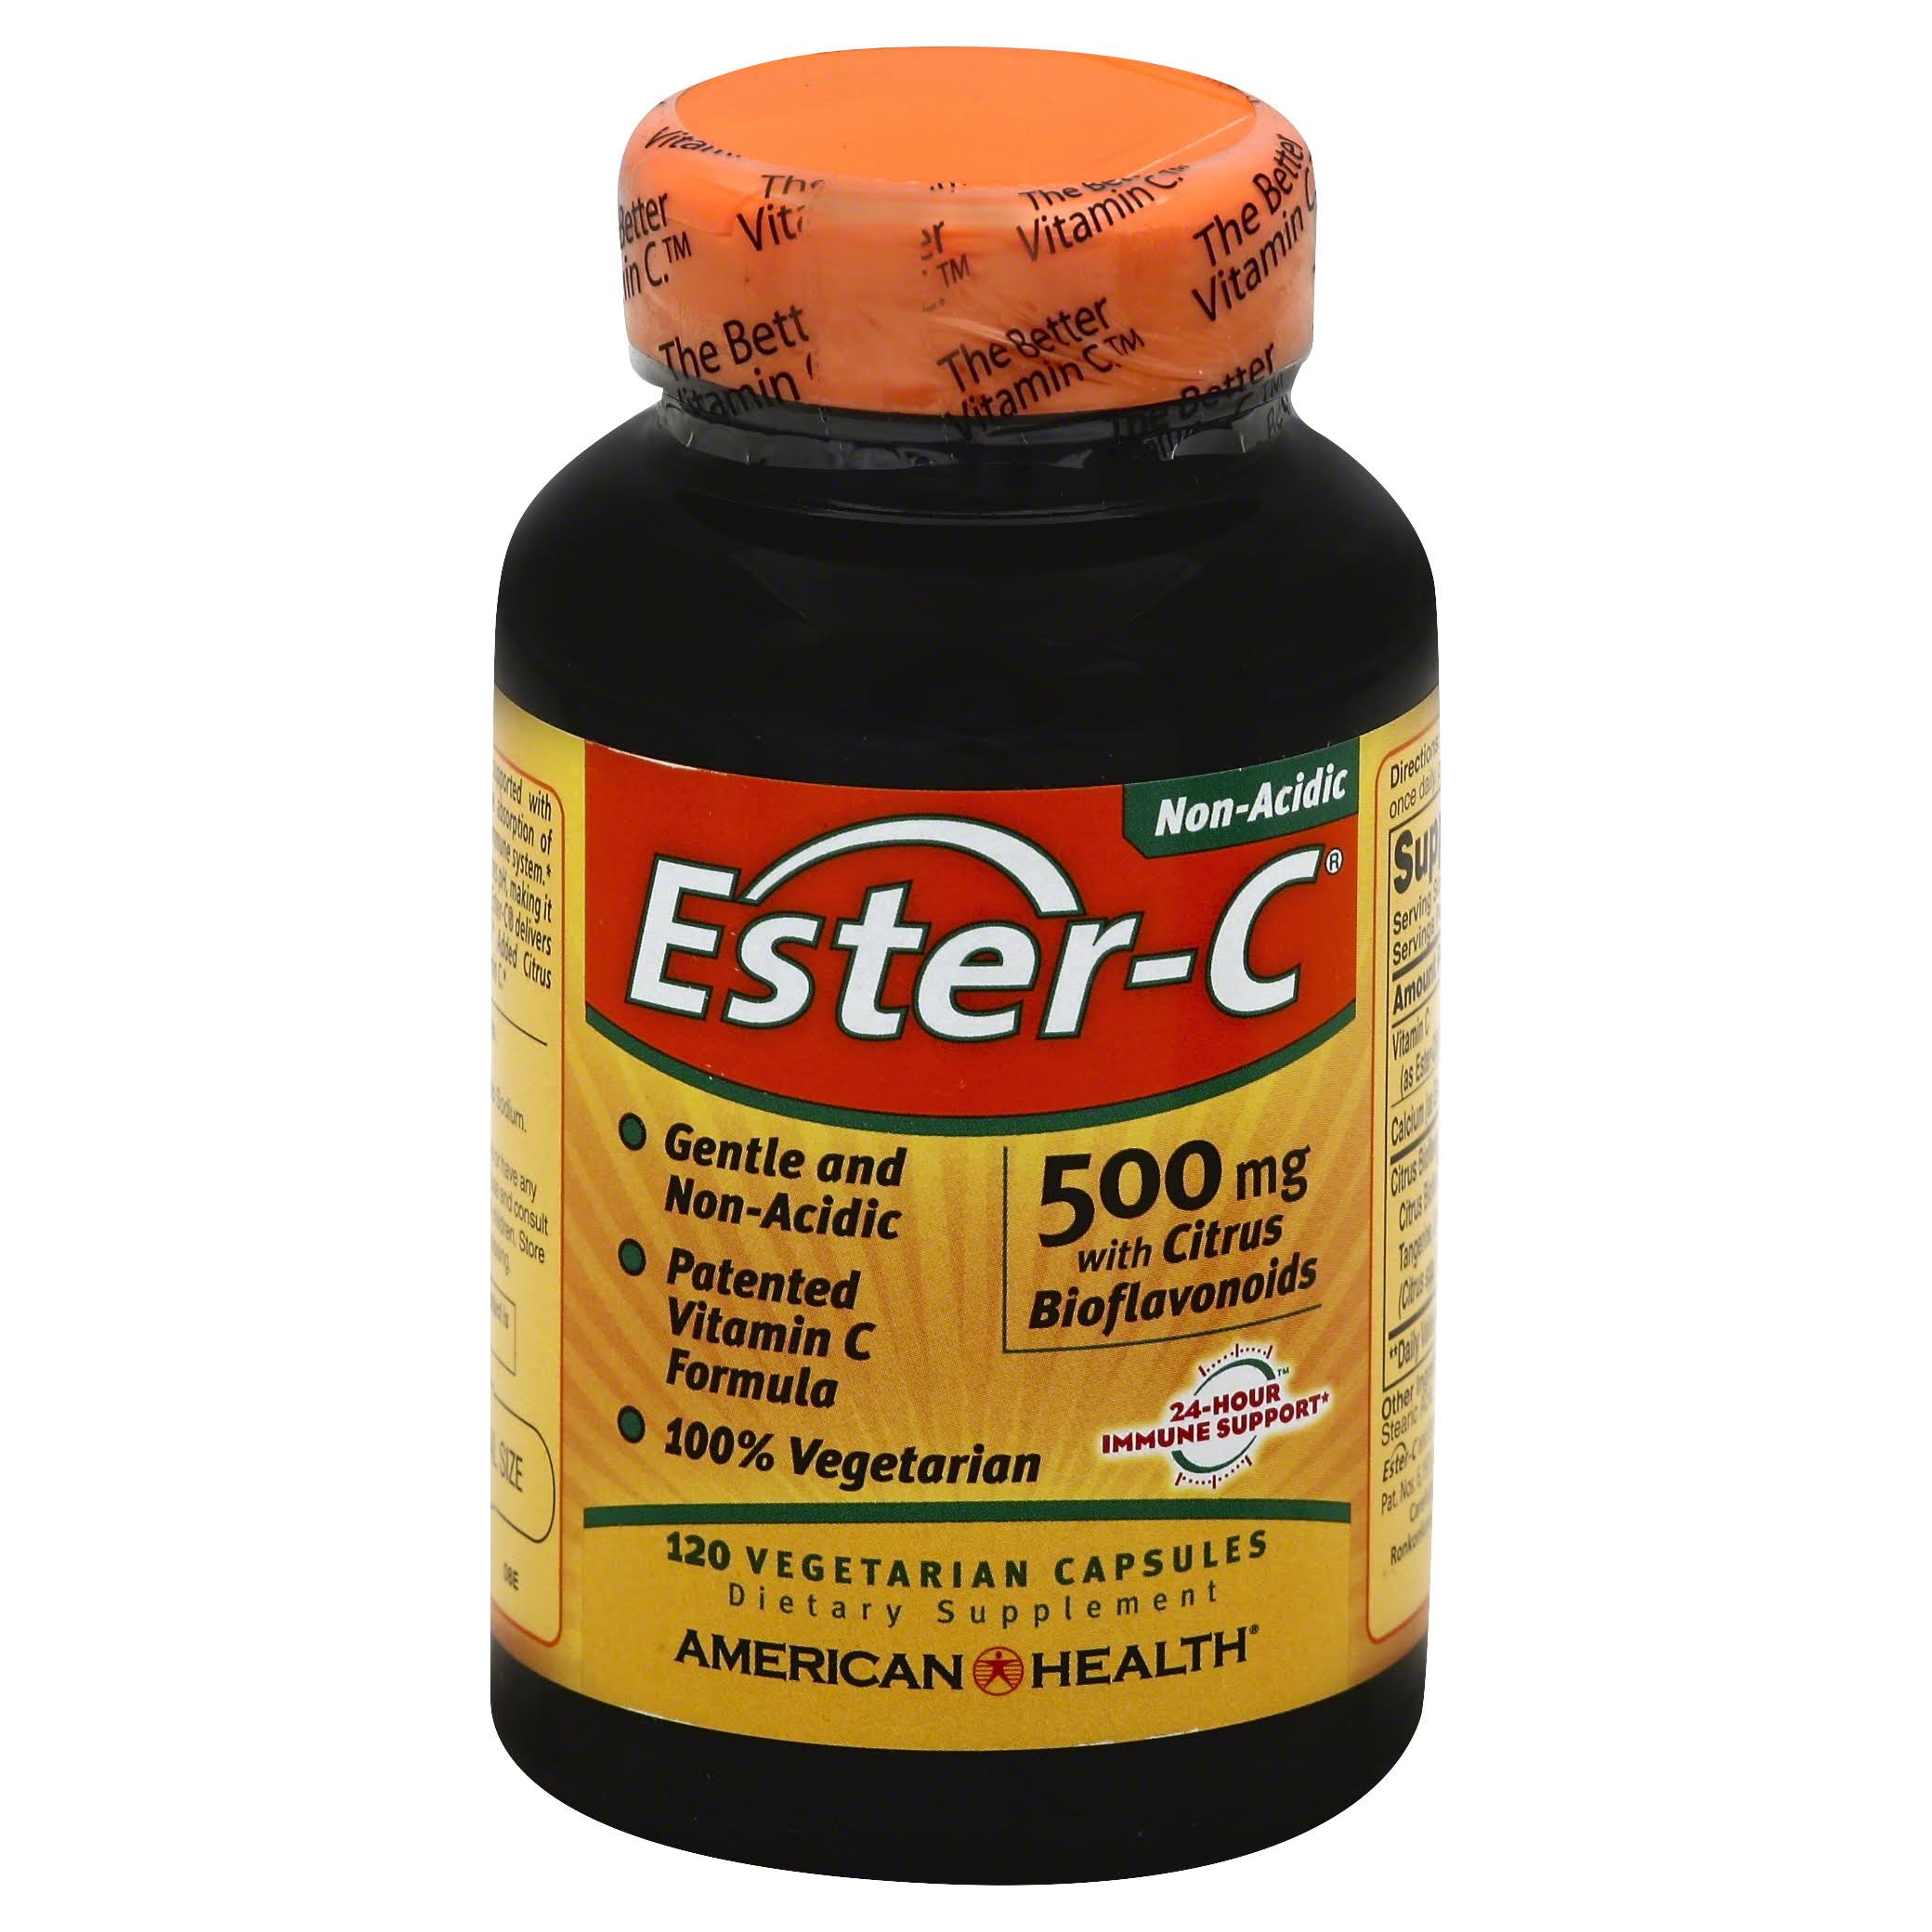 Ester-c With Citrus Bioflavonoids 500mg - 120 Capsules